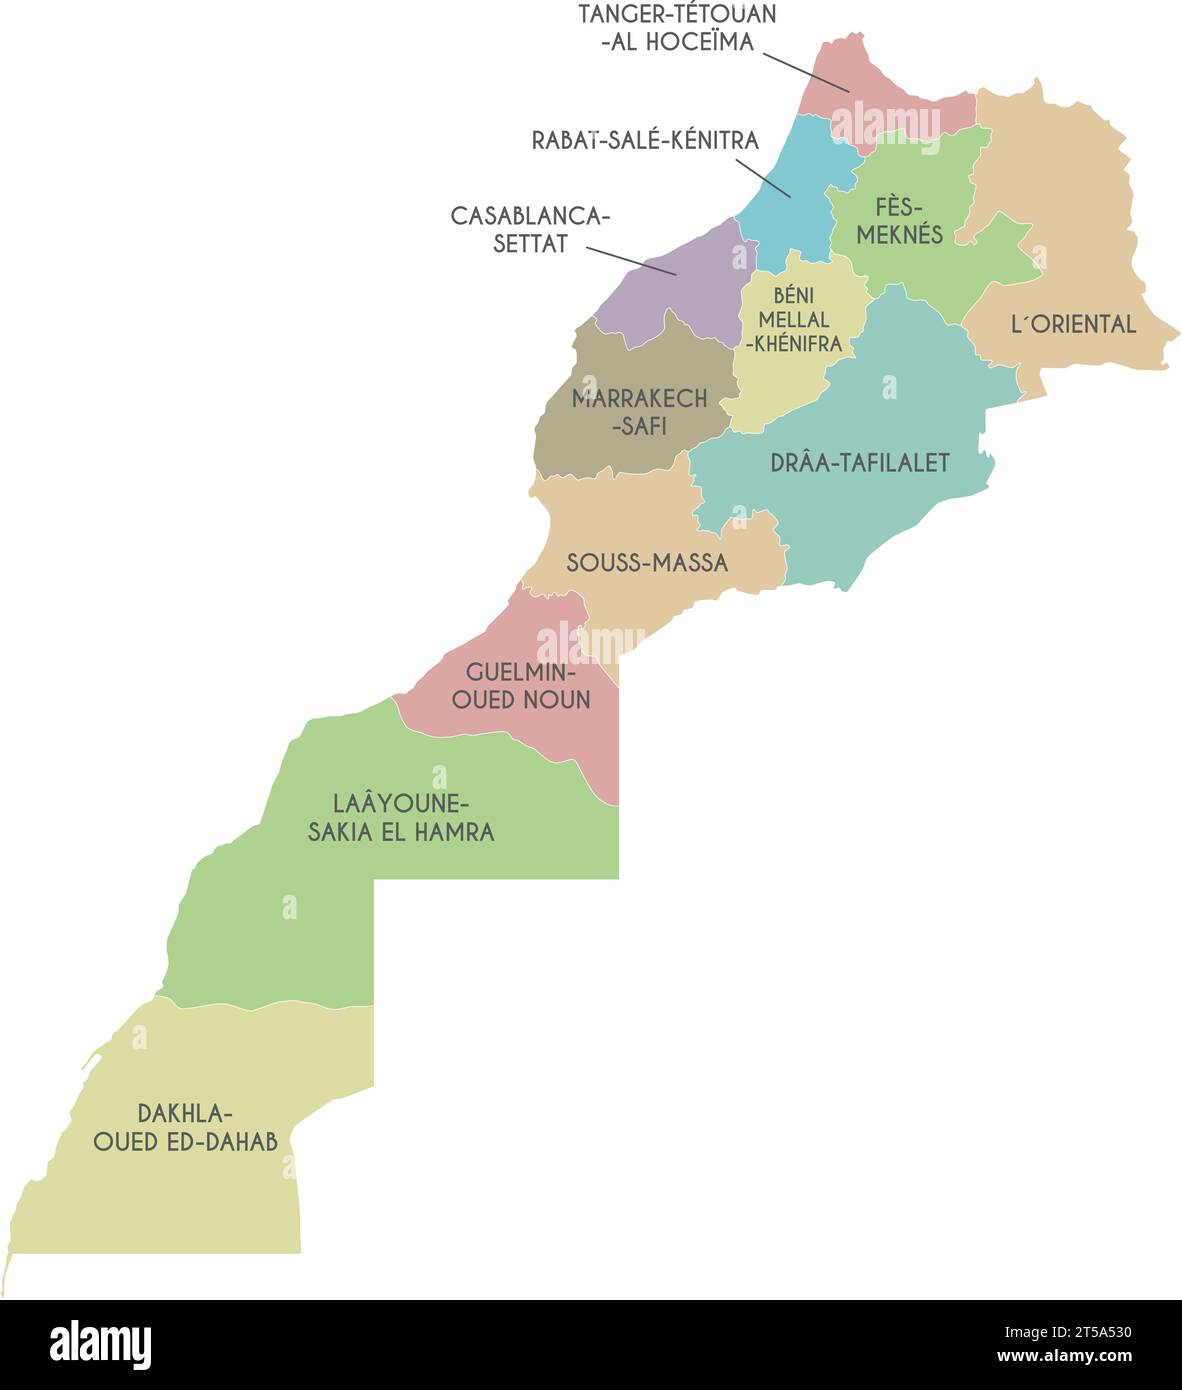 Mappa vettoriale del Marocco con regioni e divisioni amministrative. Livelli modificabili e chiaramente etichettati. Illustrazione Vettoriale